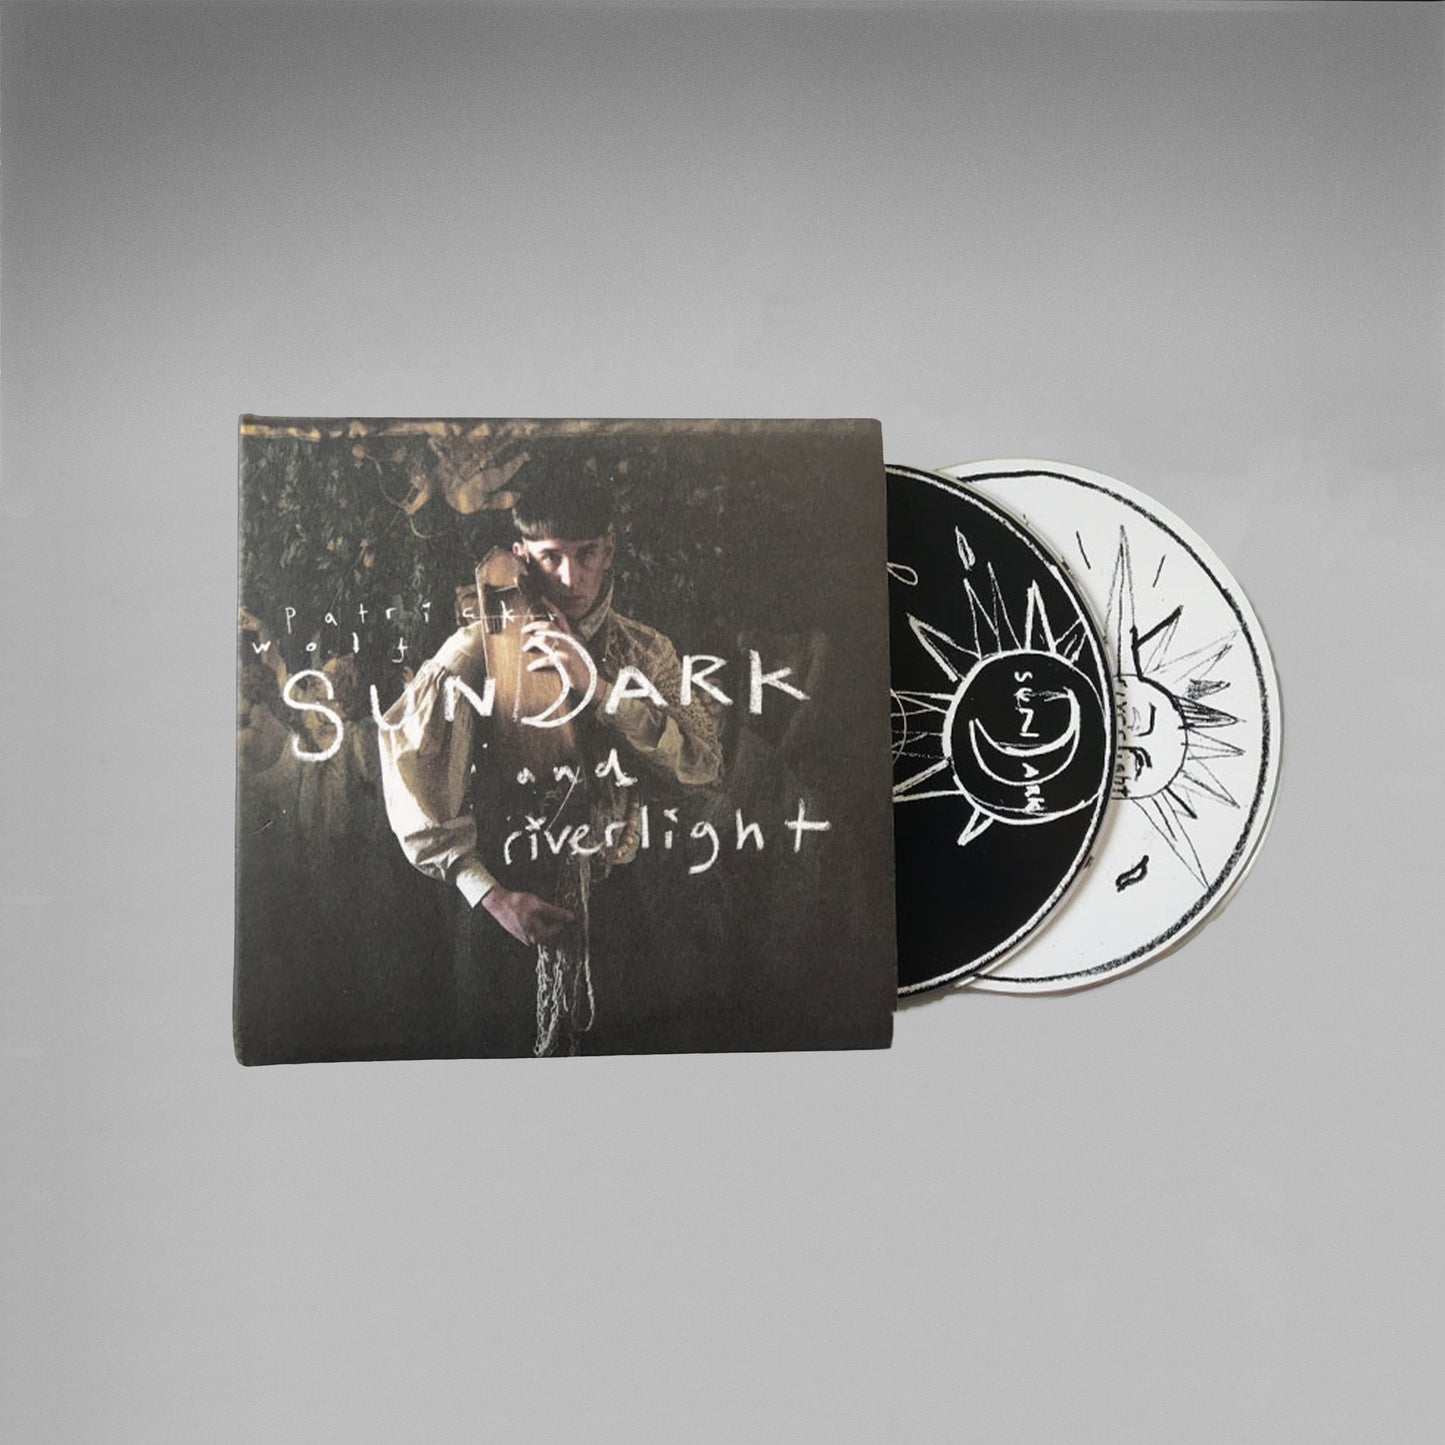 SUNDARK & RIVERLIGHT - DOUBLE CD ALBUM